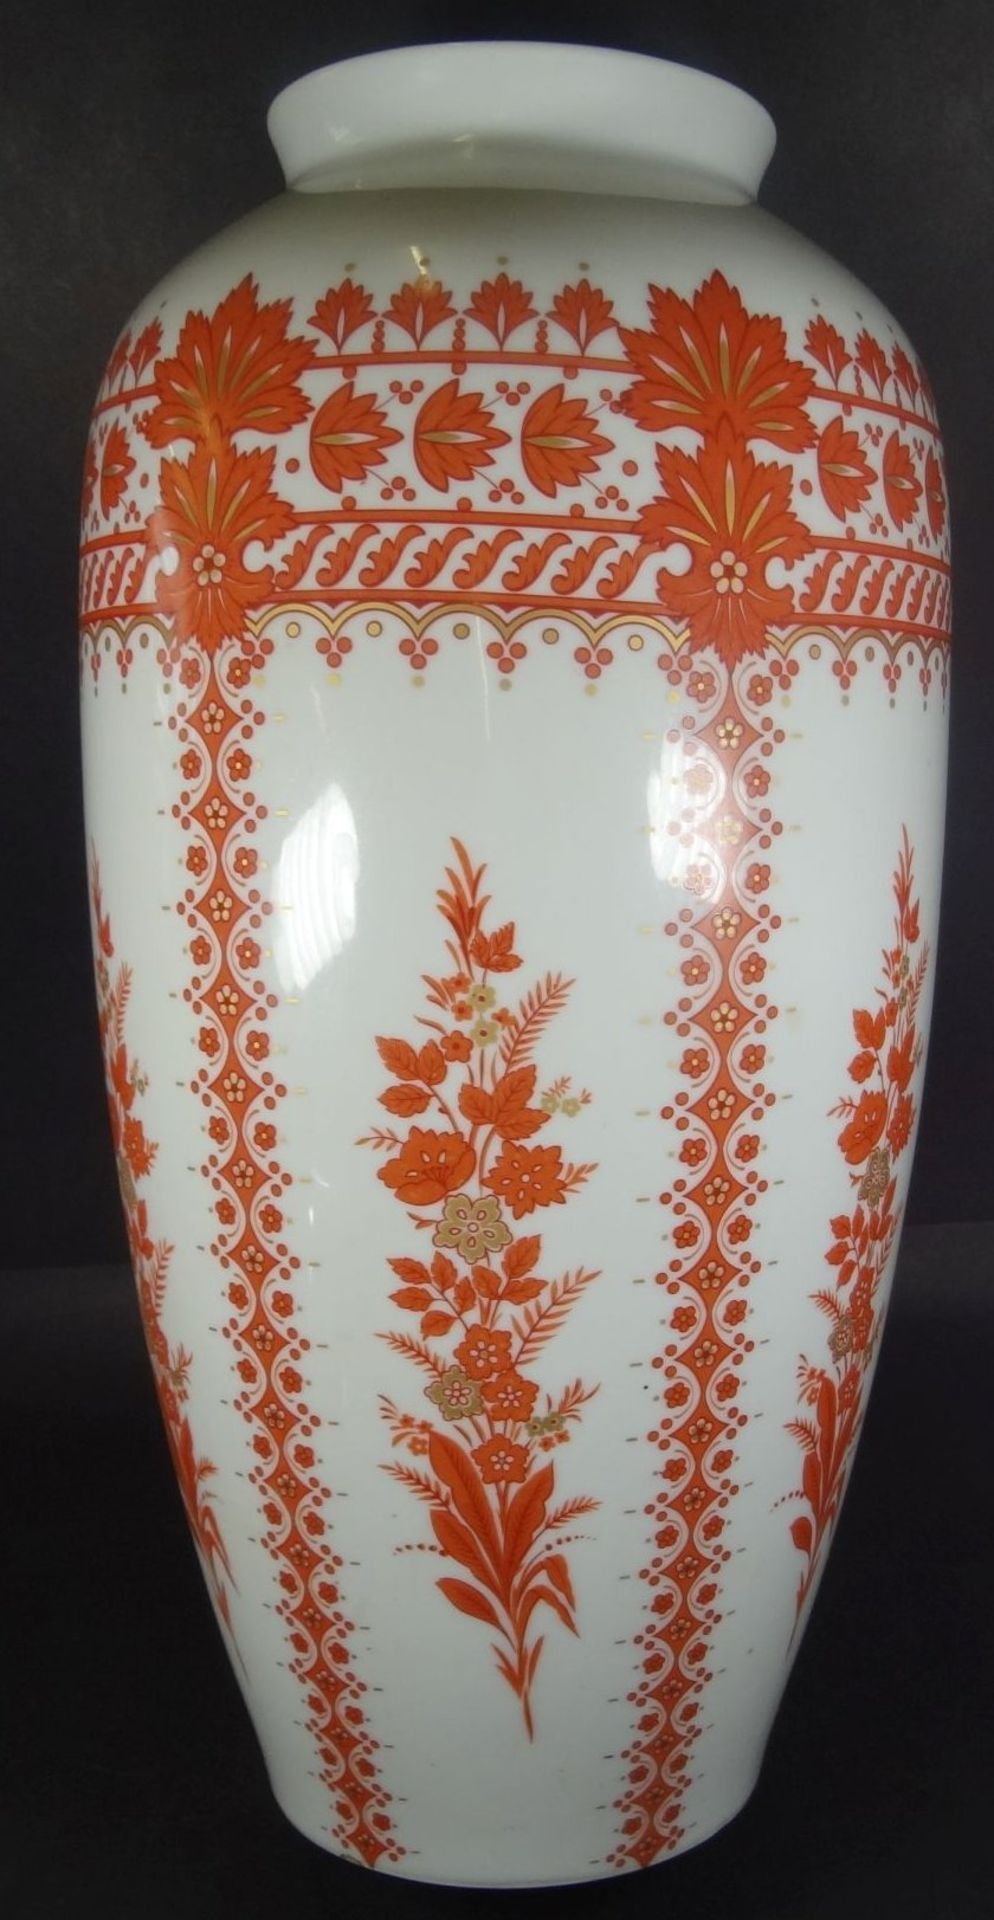 Bodenvase "Krautheim", rotes florales Dekor, H-52 cm - Bild 3 aus 6